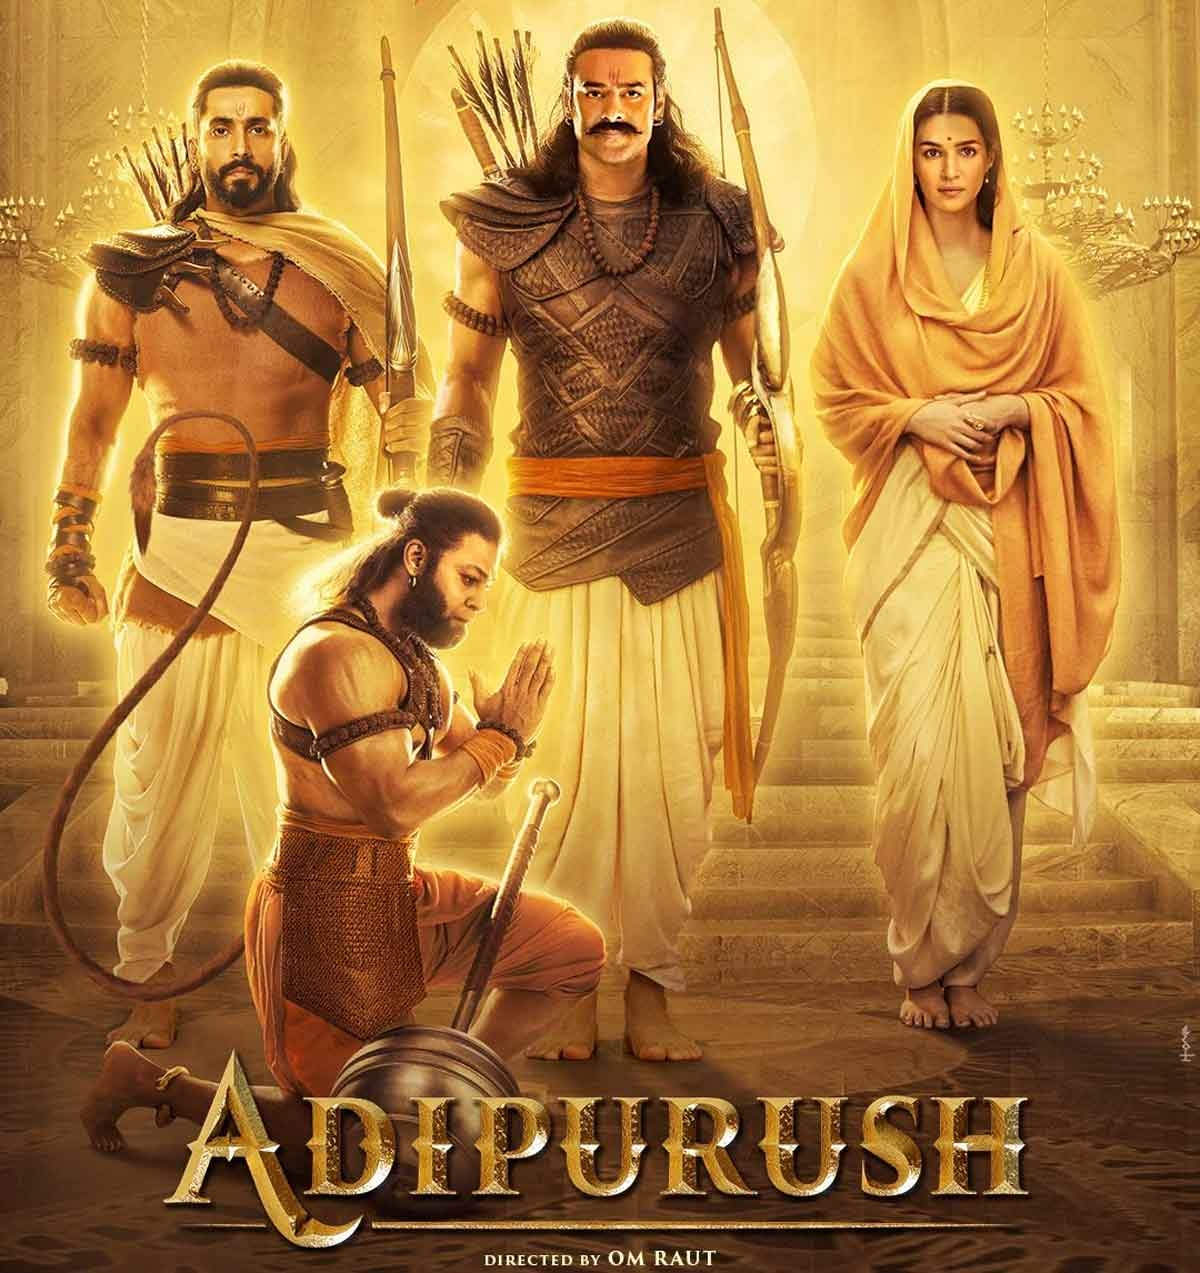 adipurush movie review in telugu rating